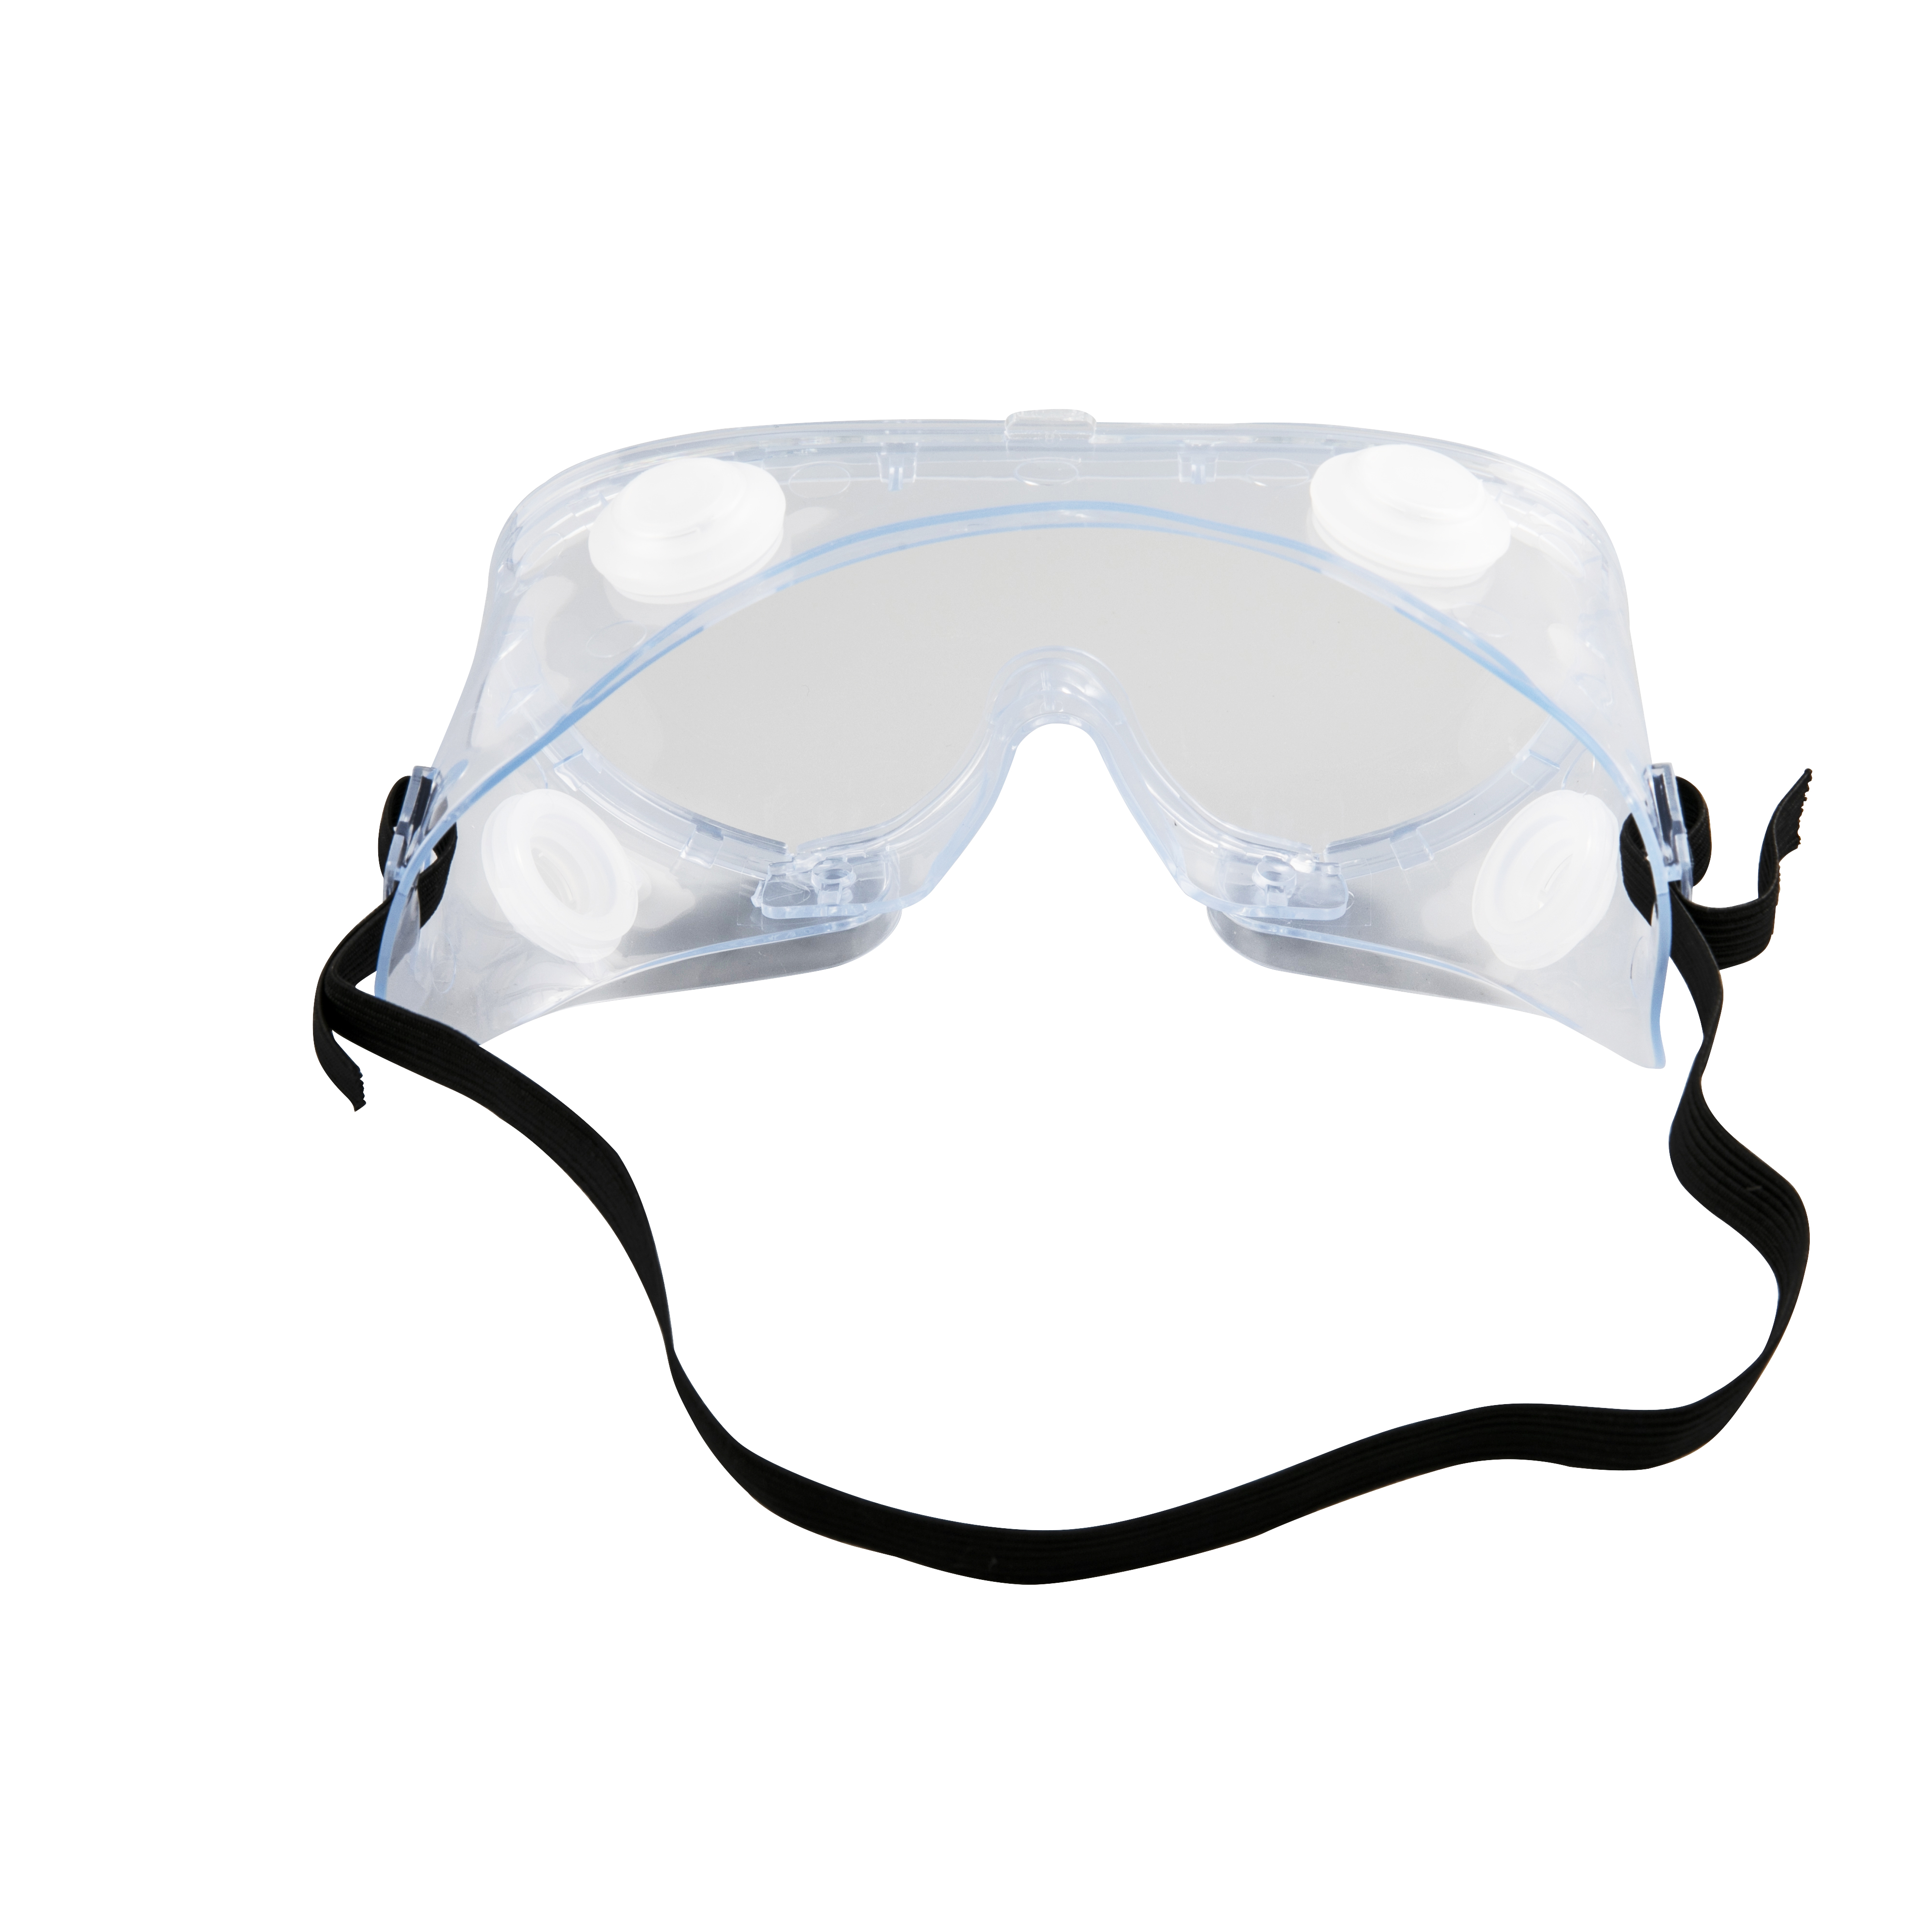 Medicinske beskyttelsesbriller